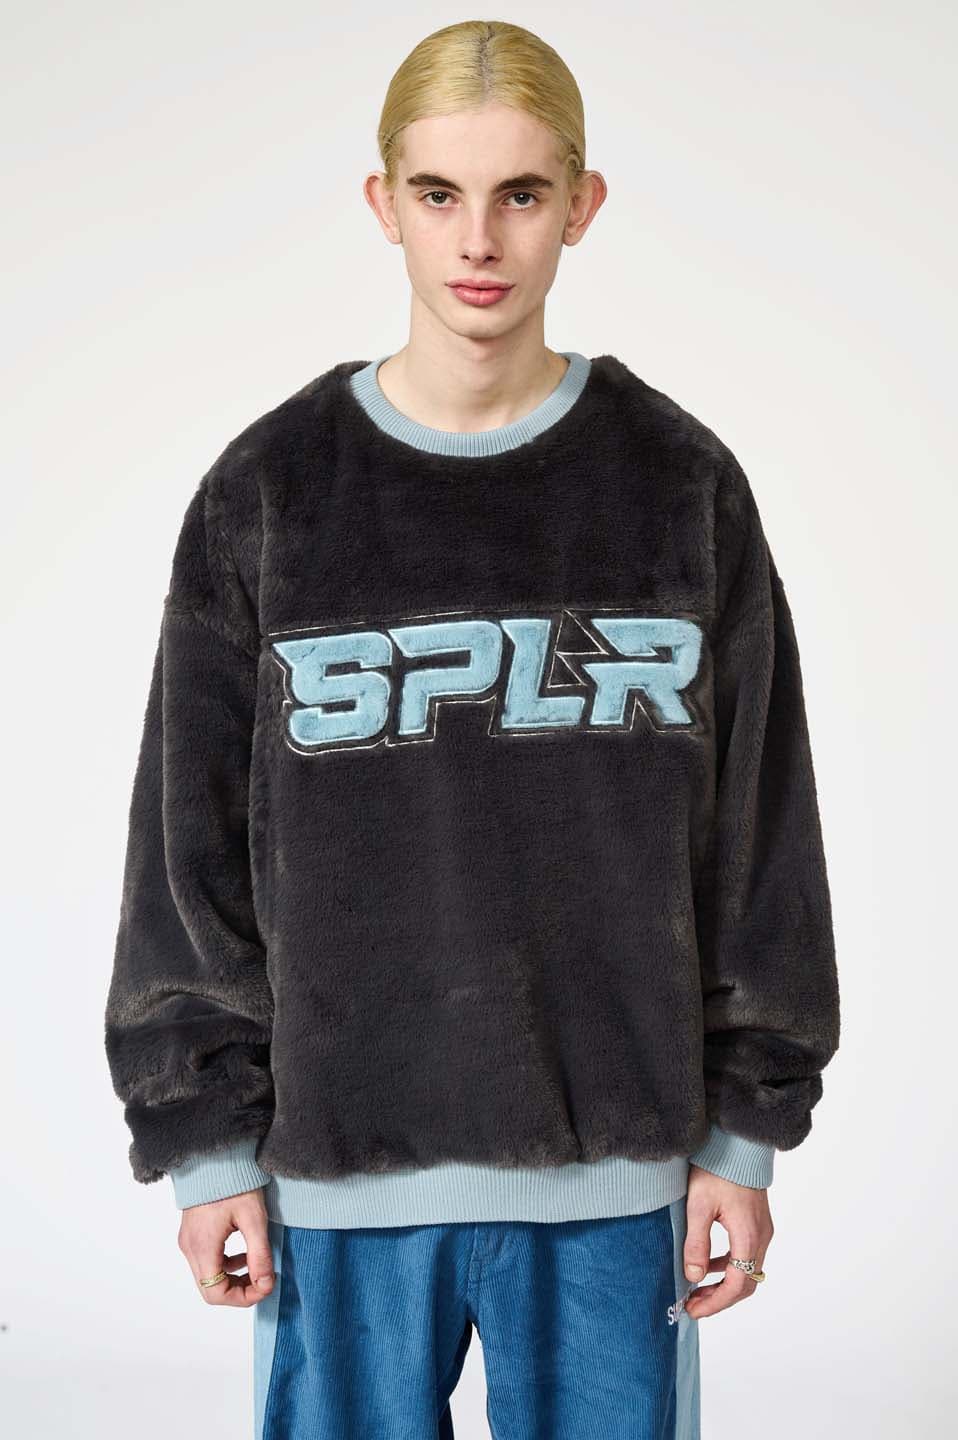 Splr Fur Pullover